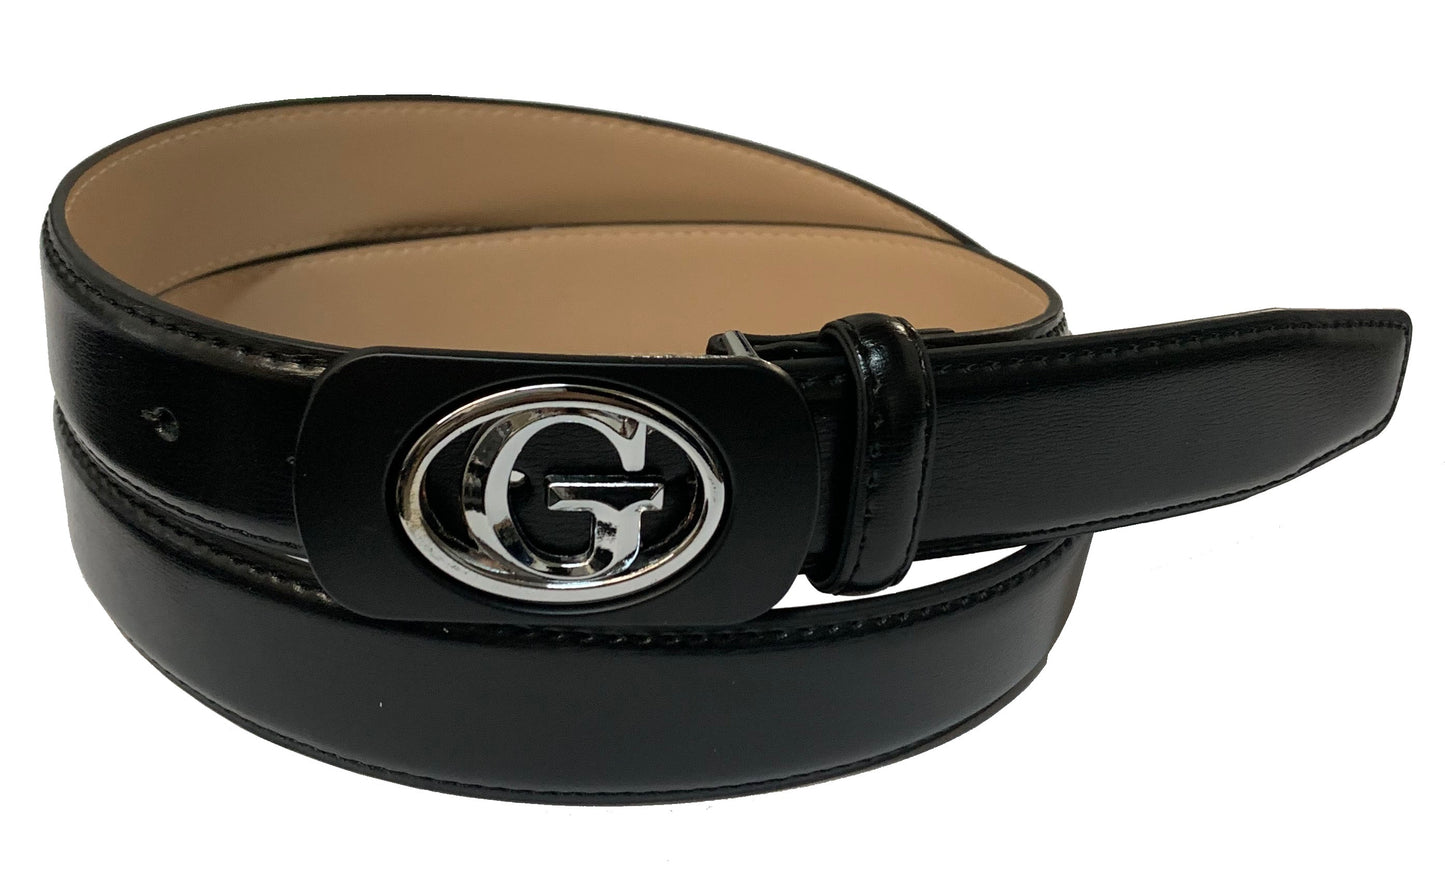 Men's Italian Steel "G" Buckle Black Leather Belt - G111